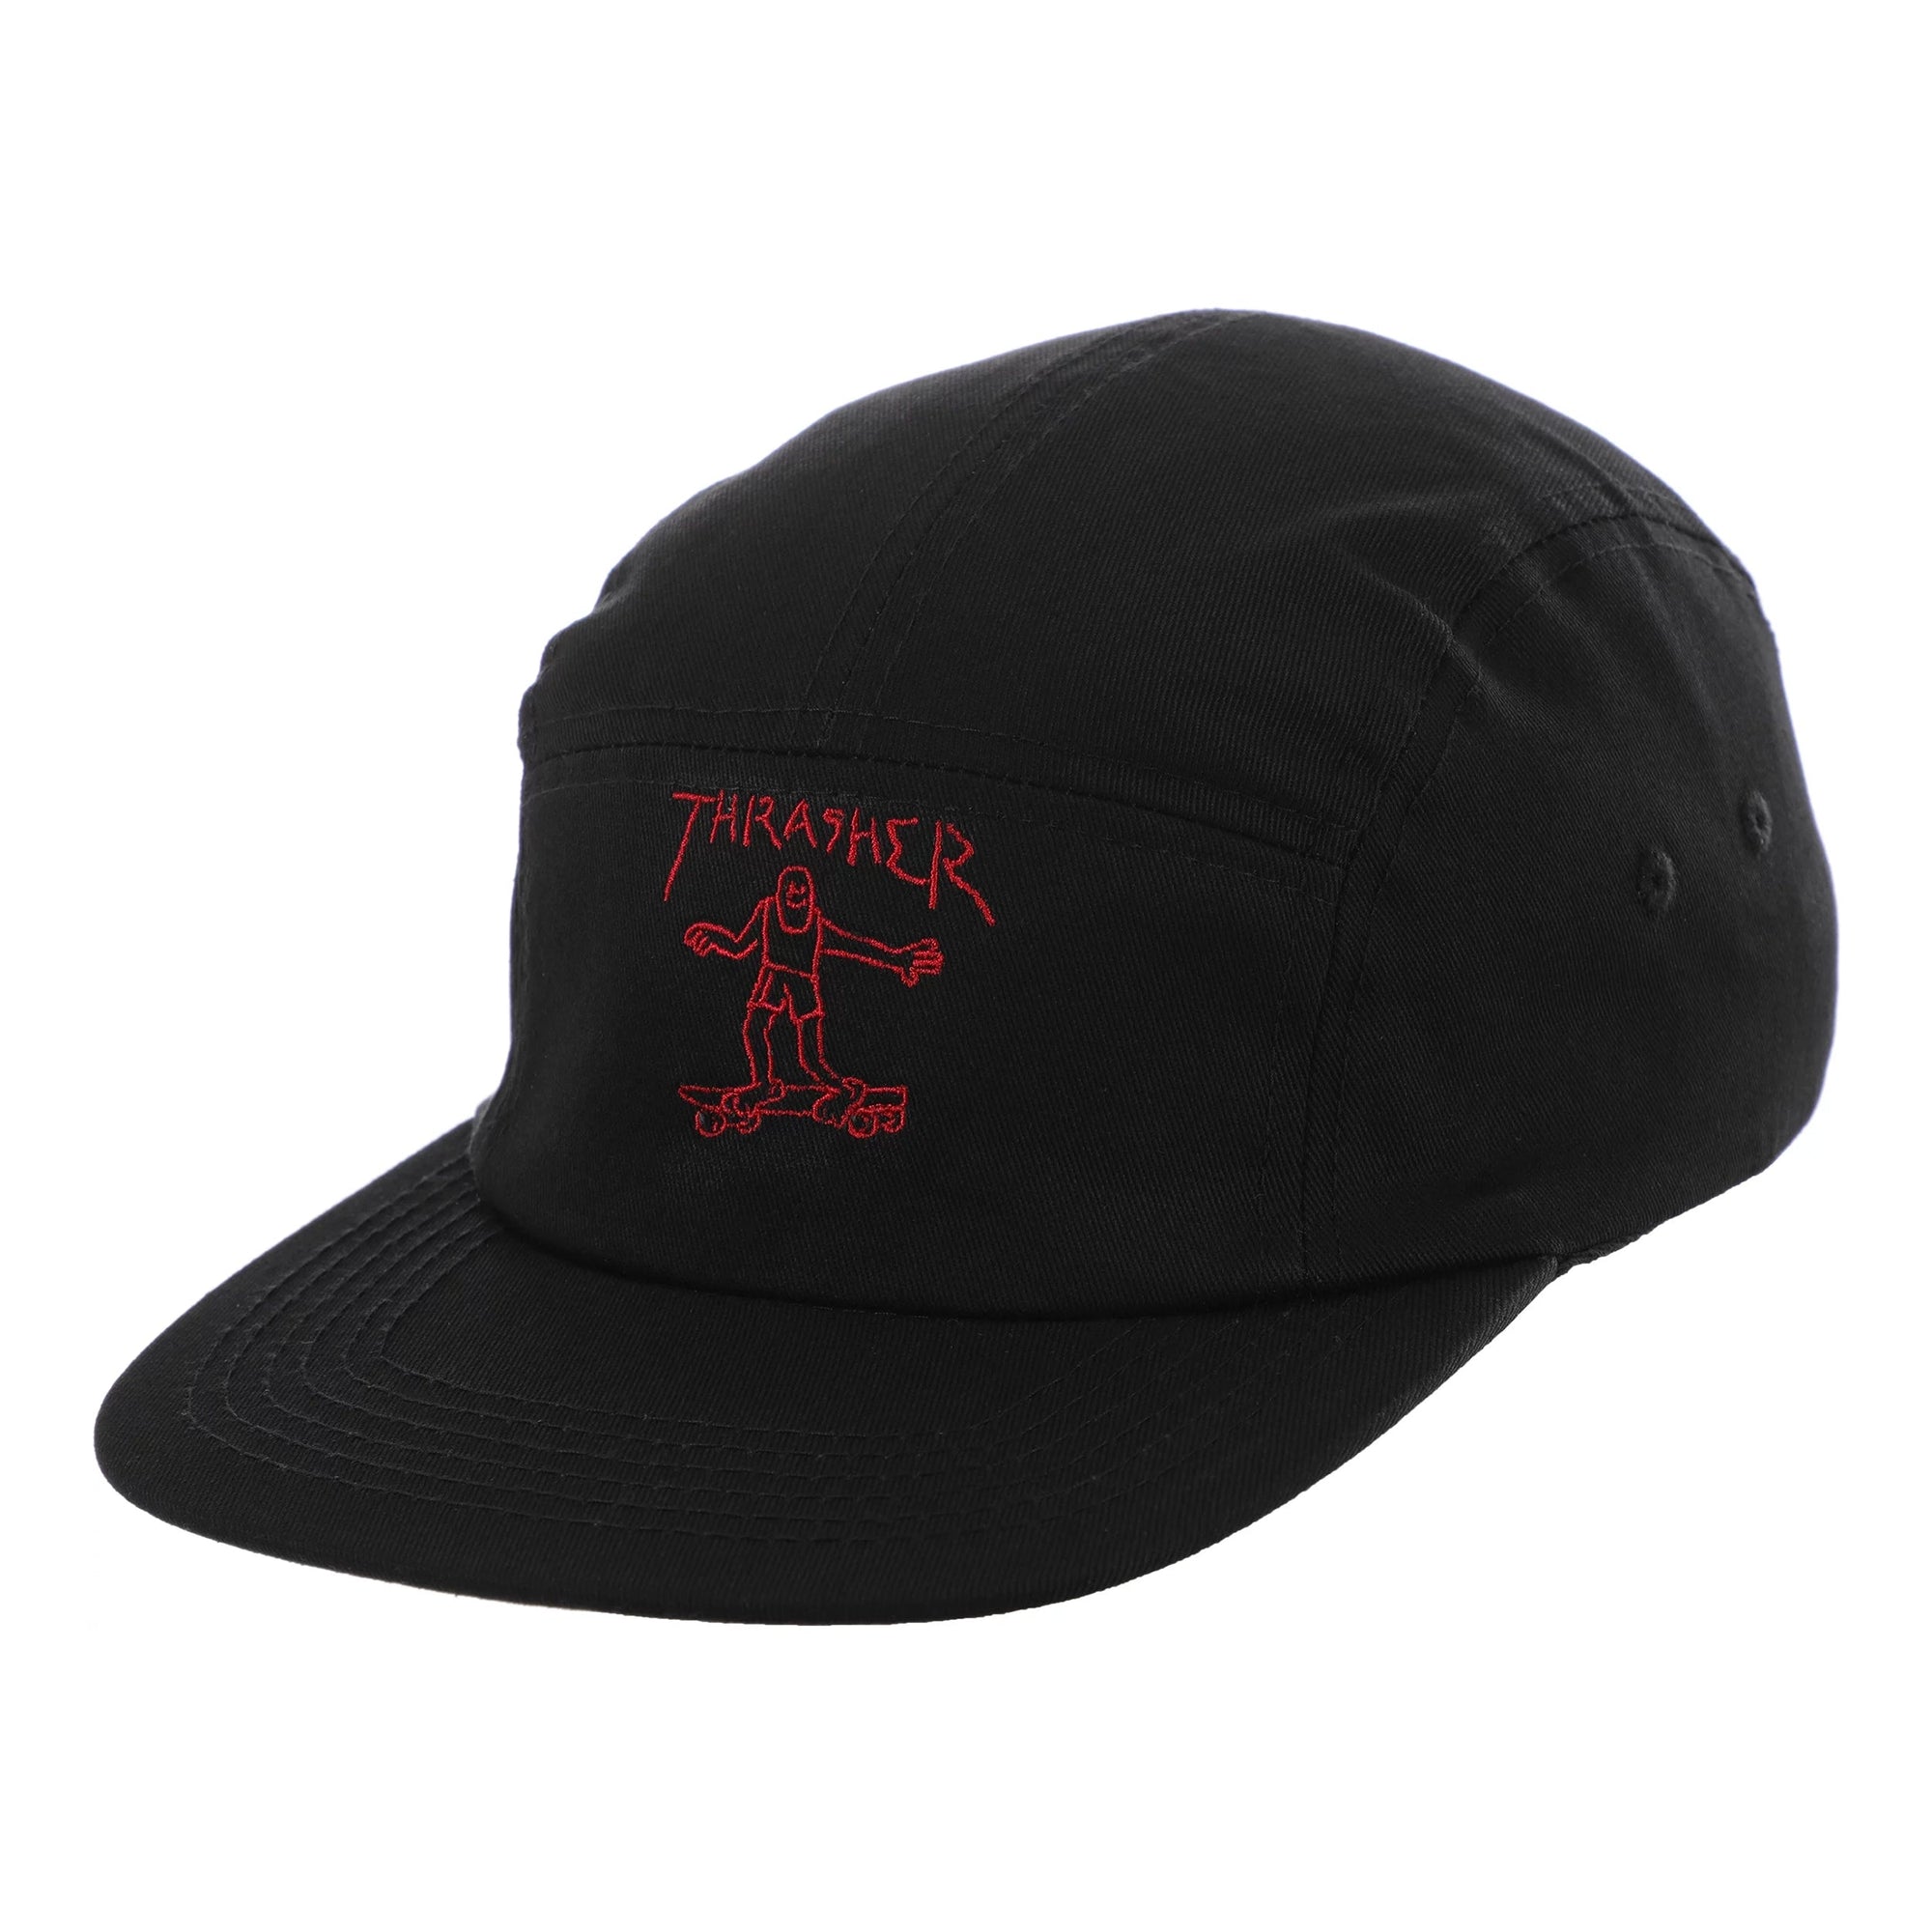 Thrasher Gonz 5 Panel Hat Black/Red hats Thrasher Magazine 